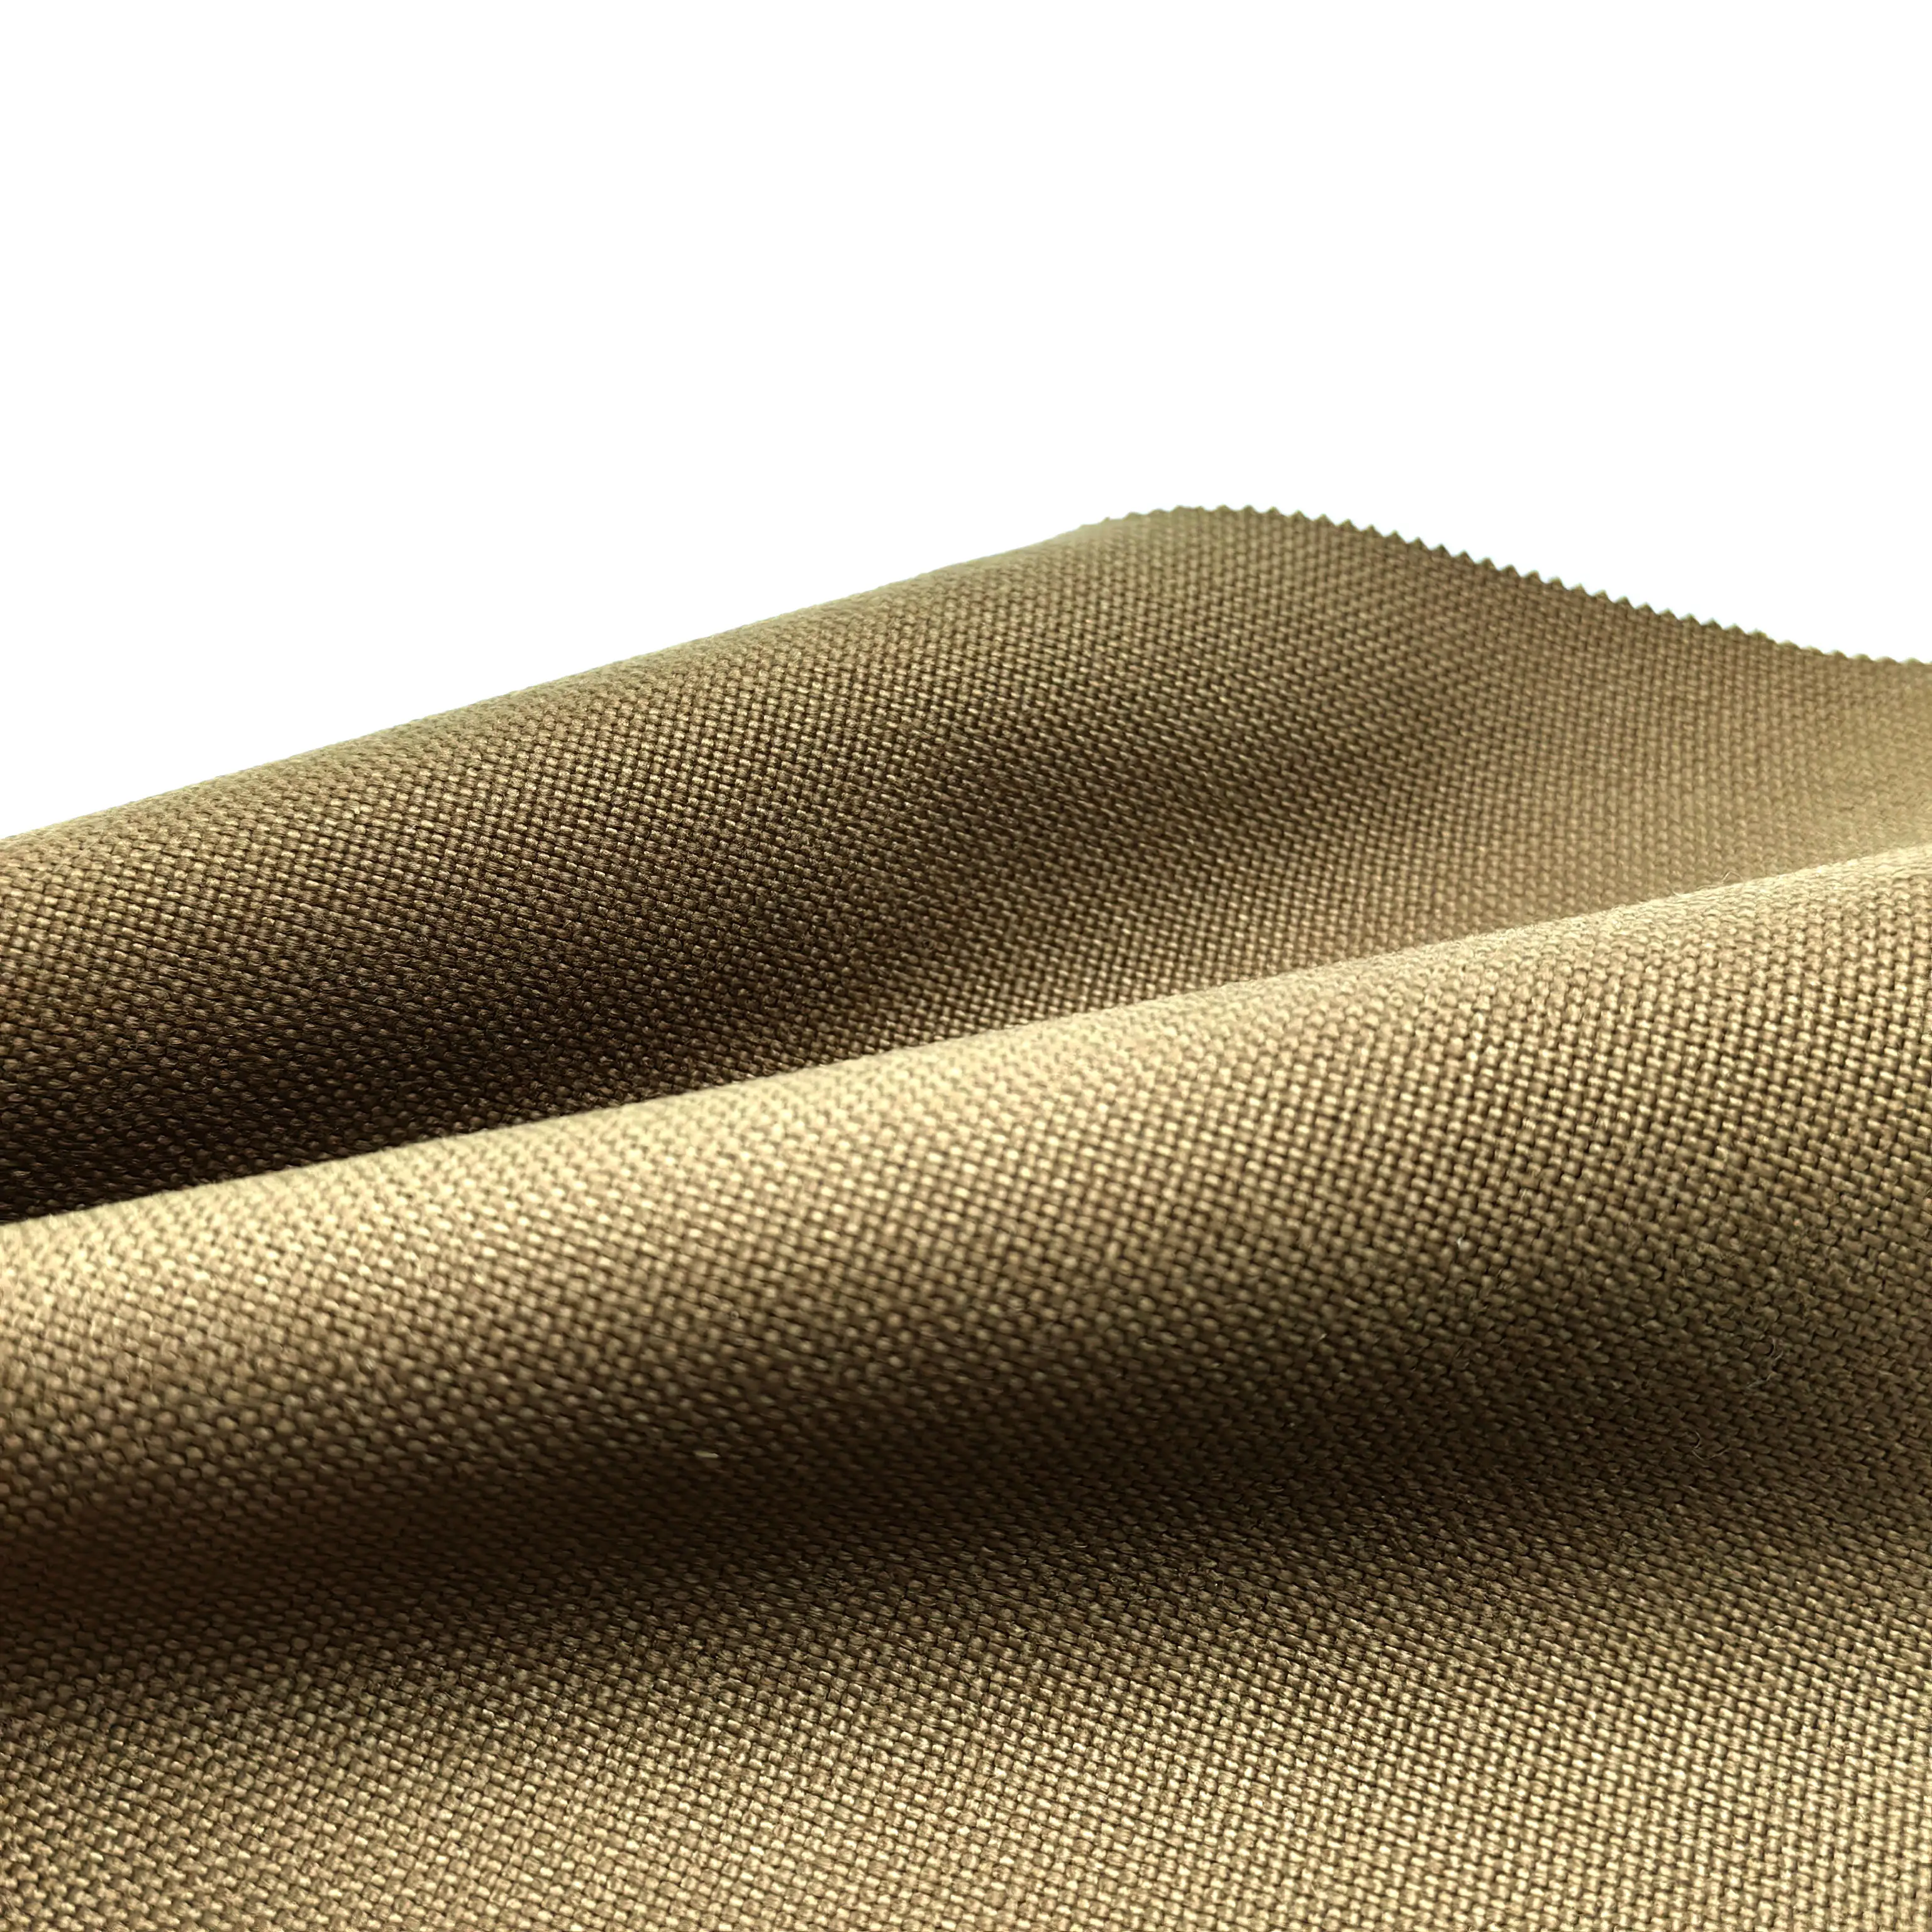 New vải cao rách độ bền kéo 500D Nylon Cordura vải cứng mặc các mặt hàng Nylon 500D Cordura Ba lô vải